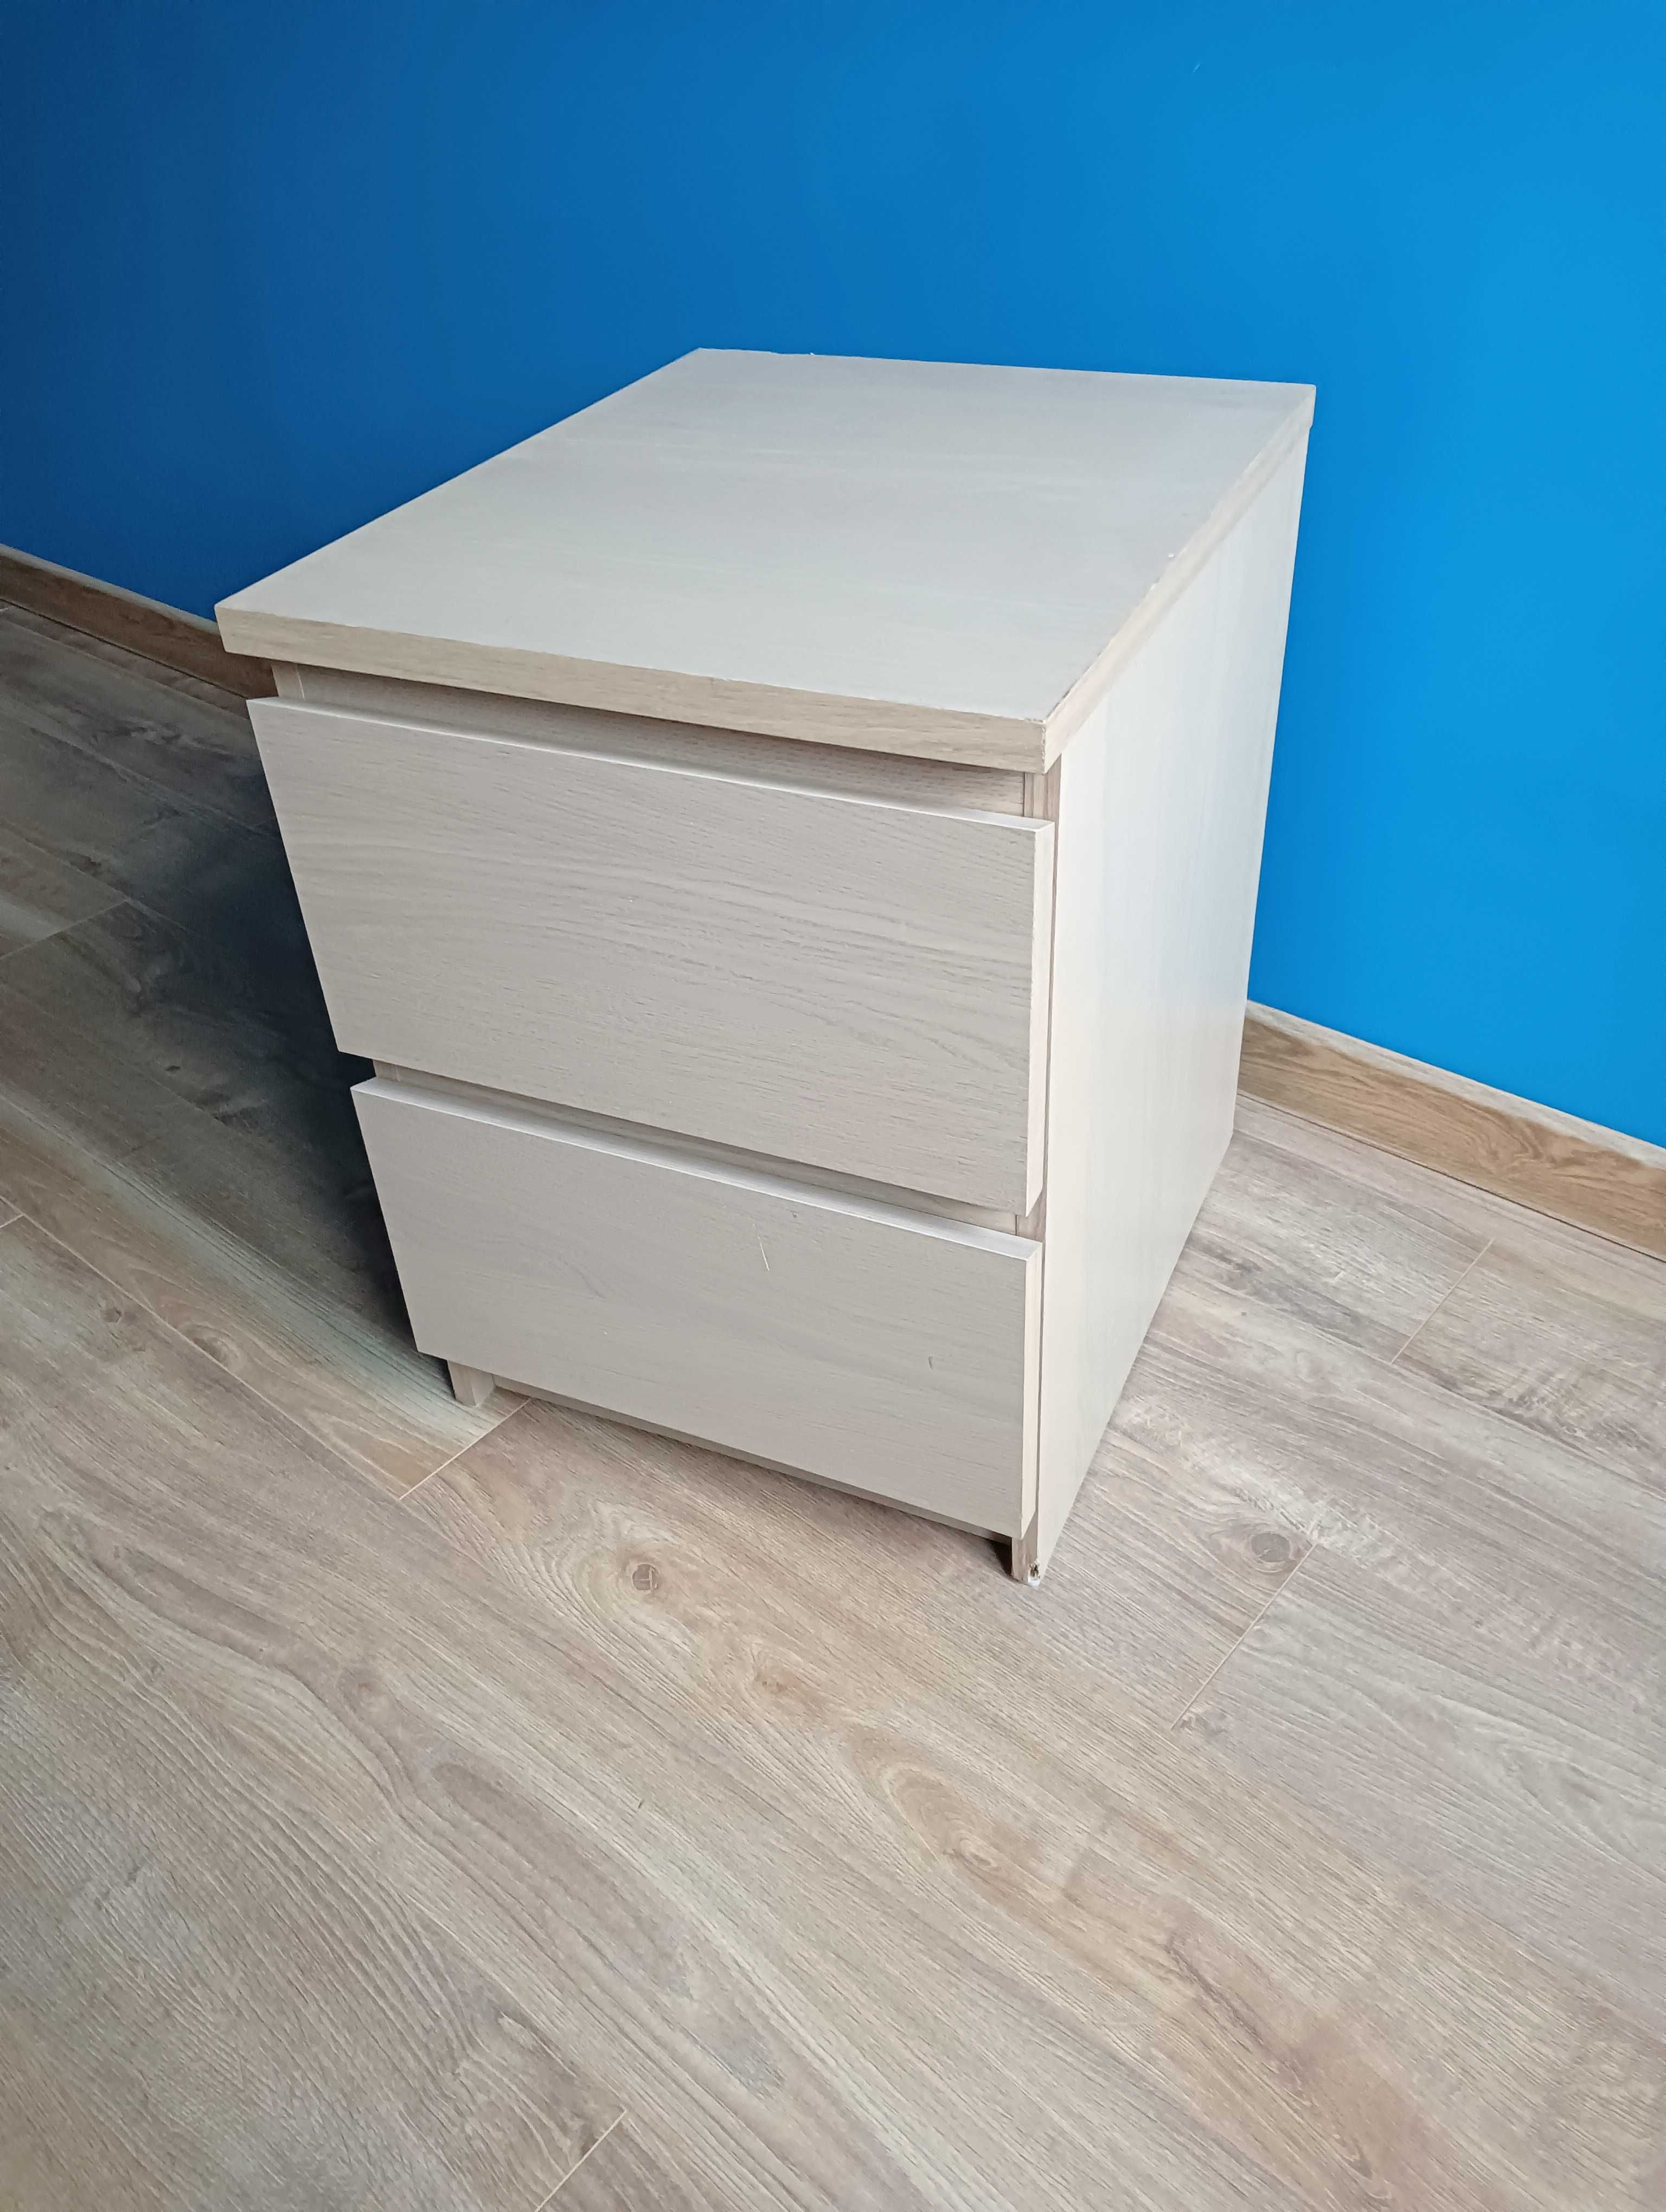 Mała komoda/ szafka nocna IKEA, 2 szuflady, okleina dębowa, 40x55 cm